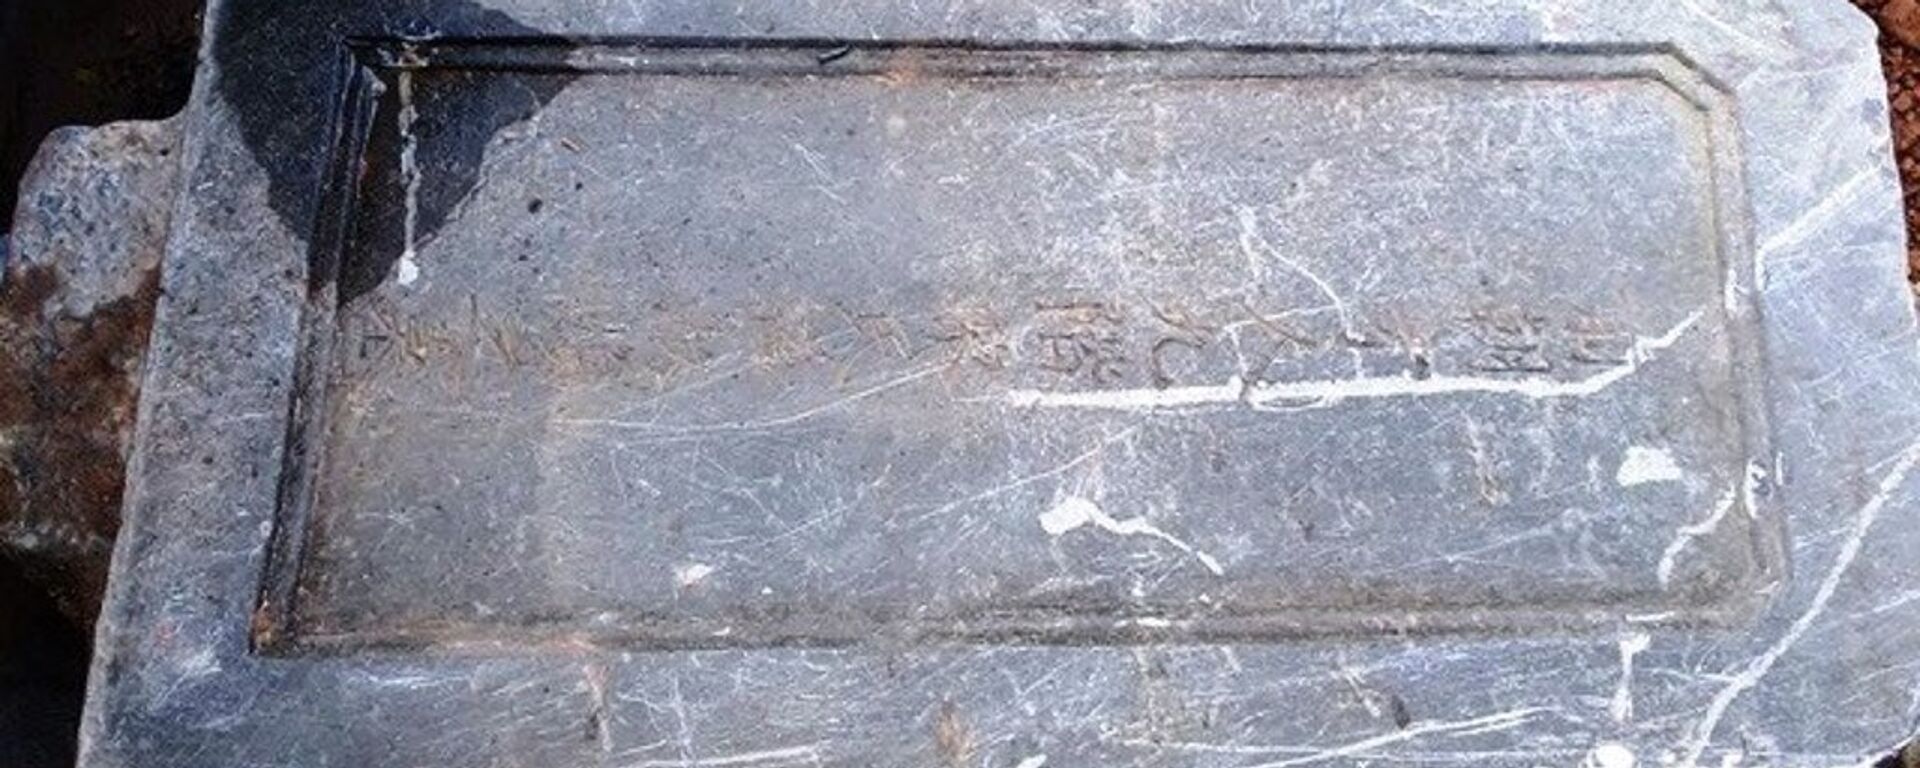 Tấm bia mộ vợ vua được tìm thấy vào chiều 24/6 sau khi bị đơn vị thi công vùi lấp. - Sputnik Việt Nam, 1920, 27.06.2017